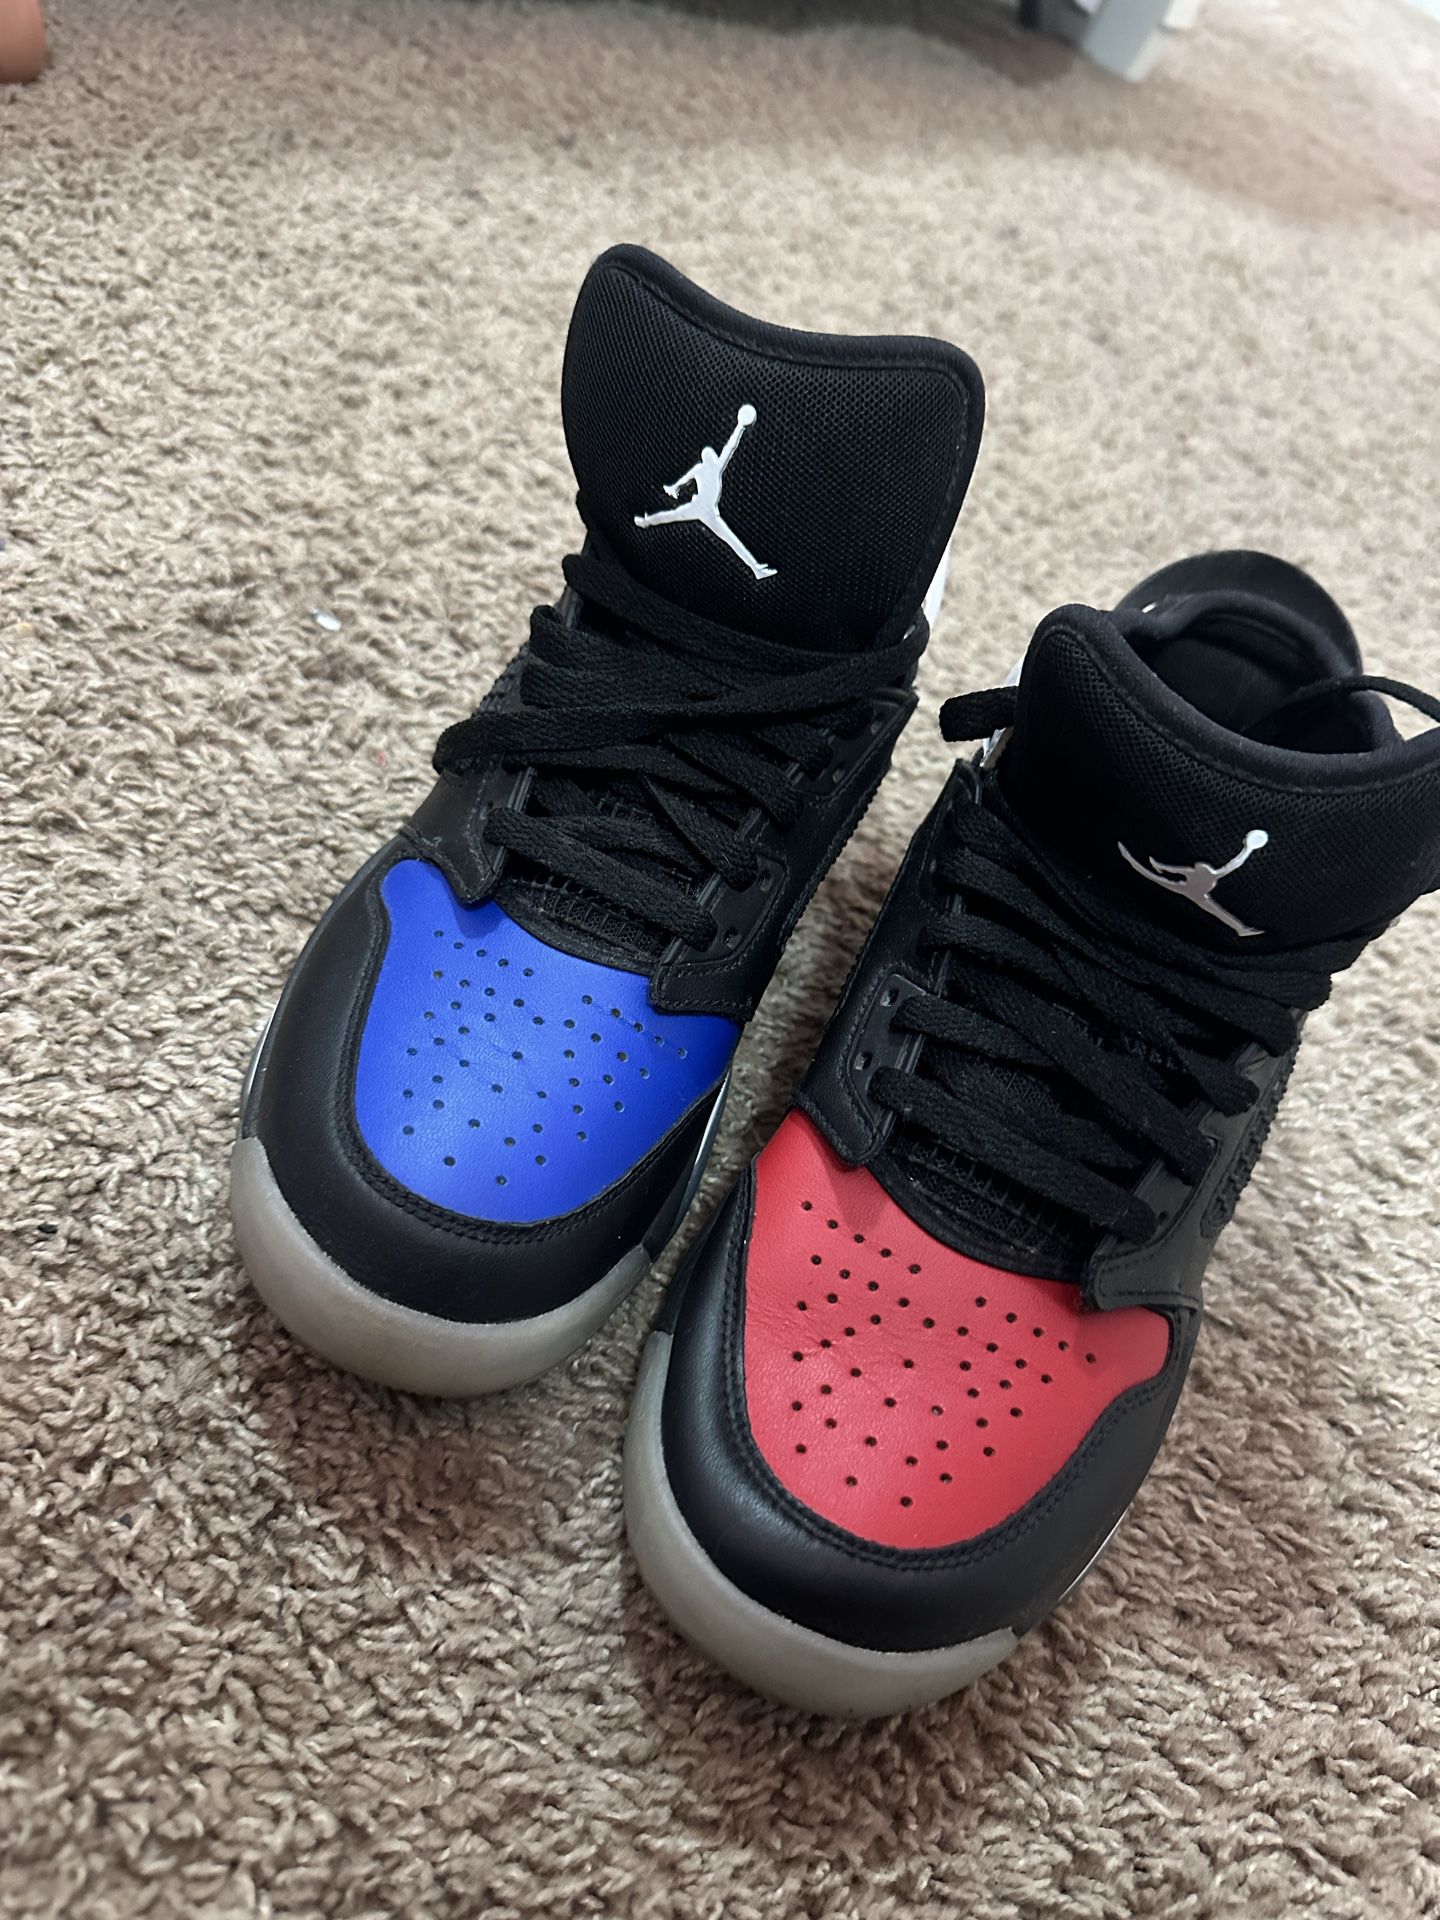 Air Jordan’s 